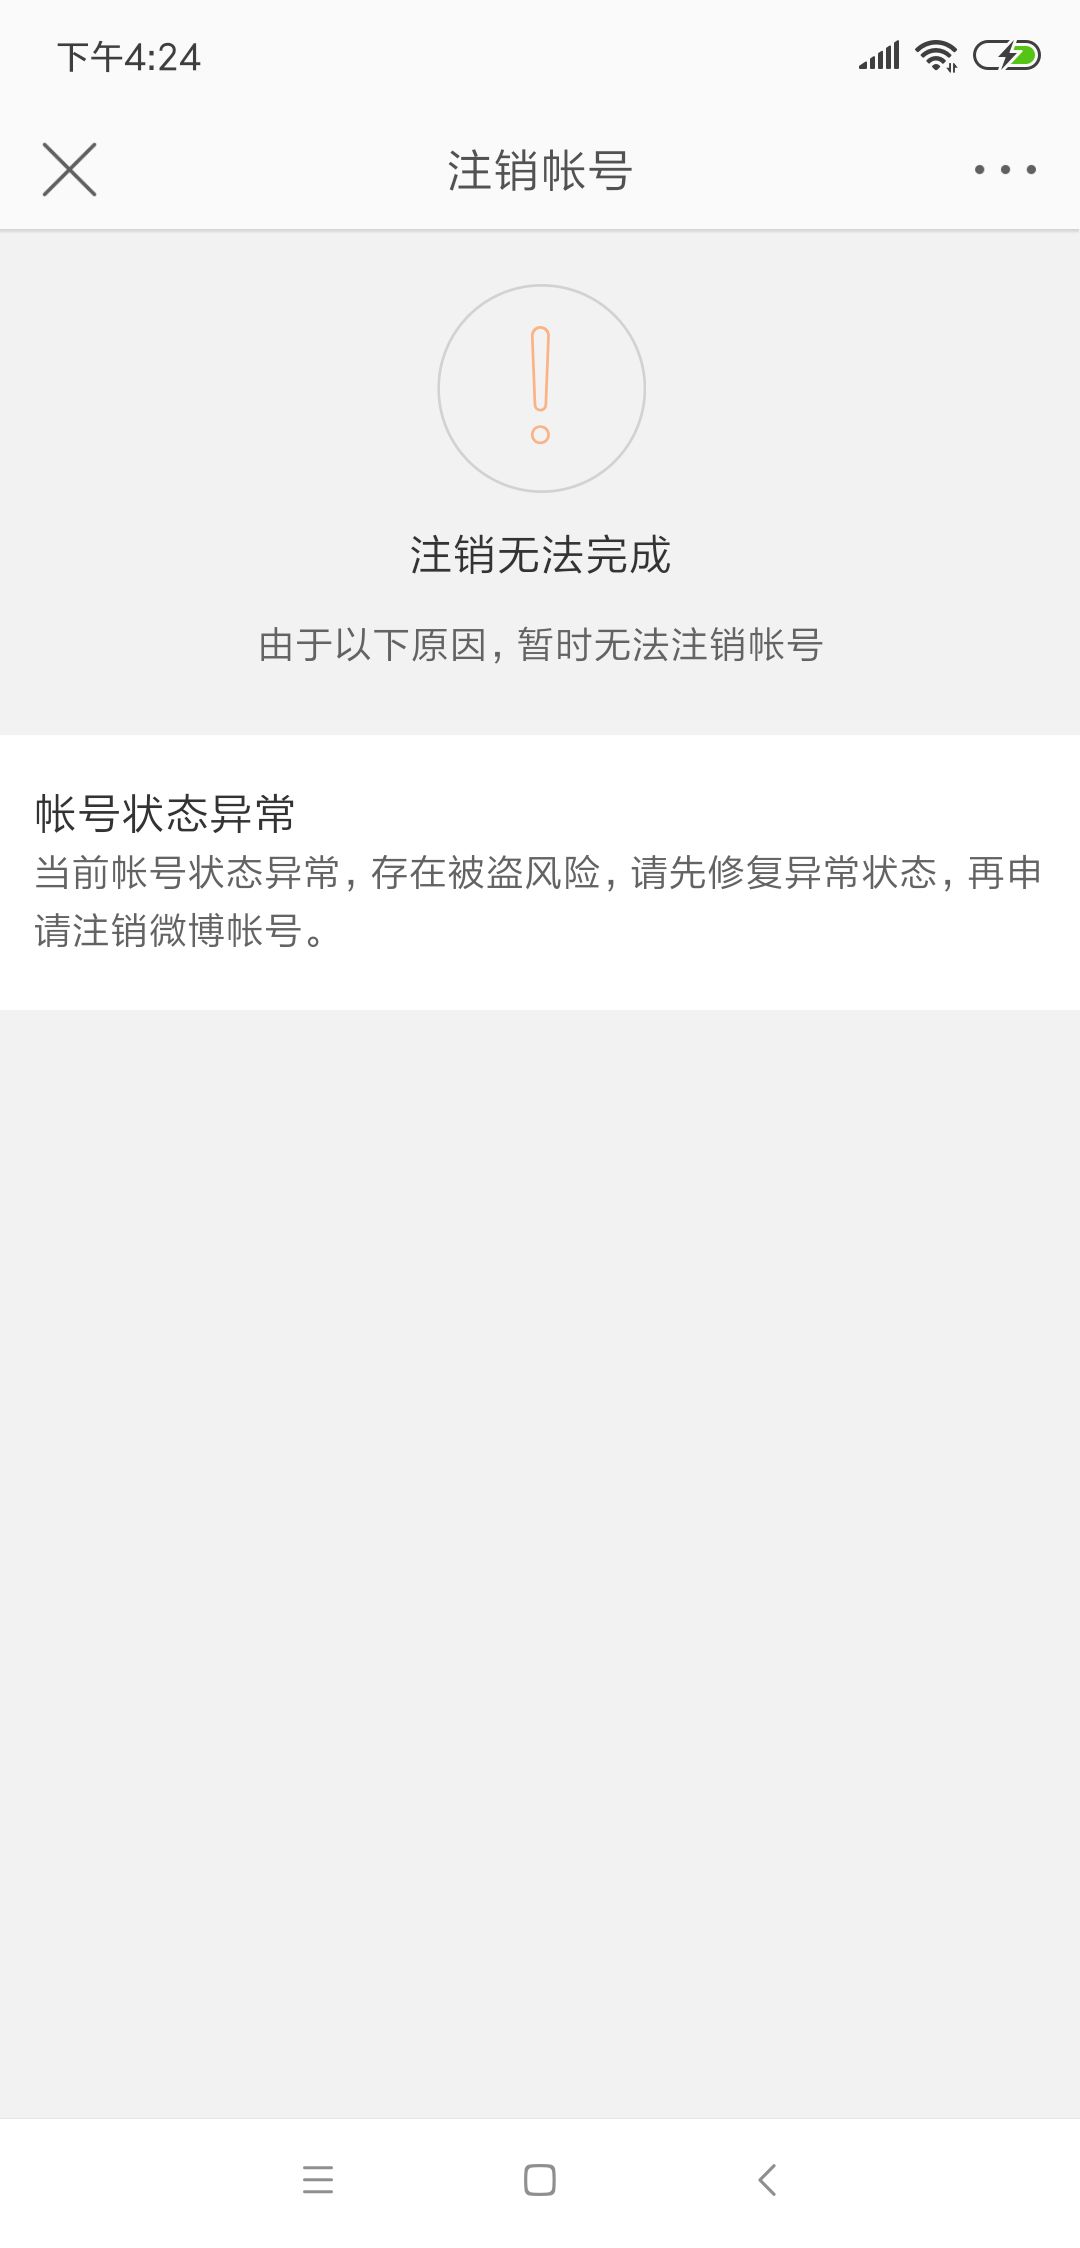 QQ账号已注销图片